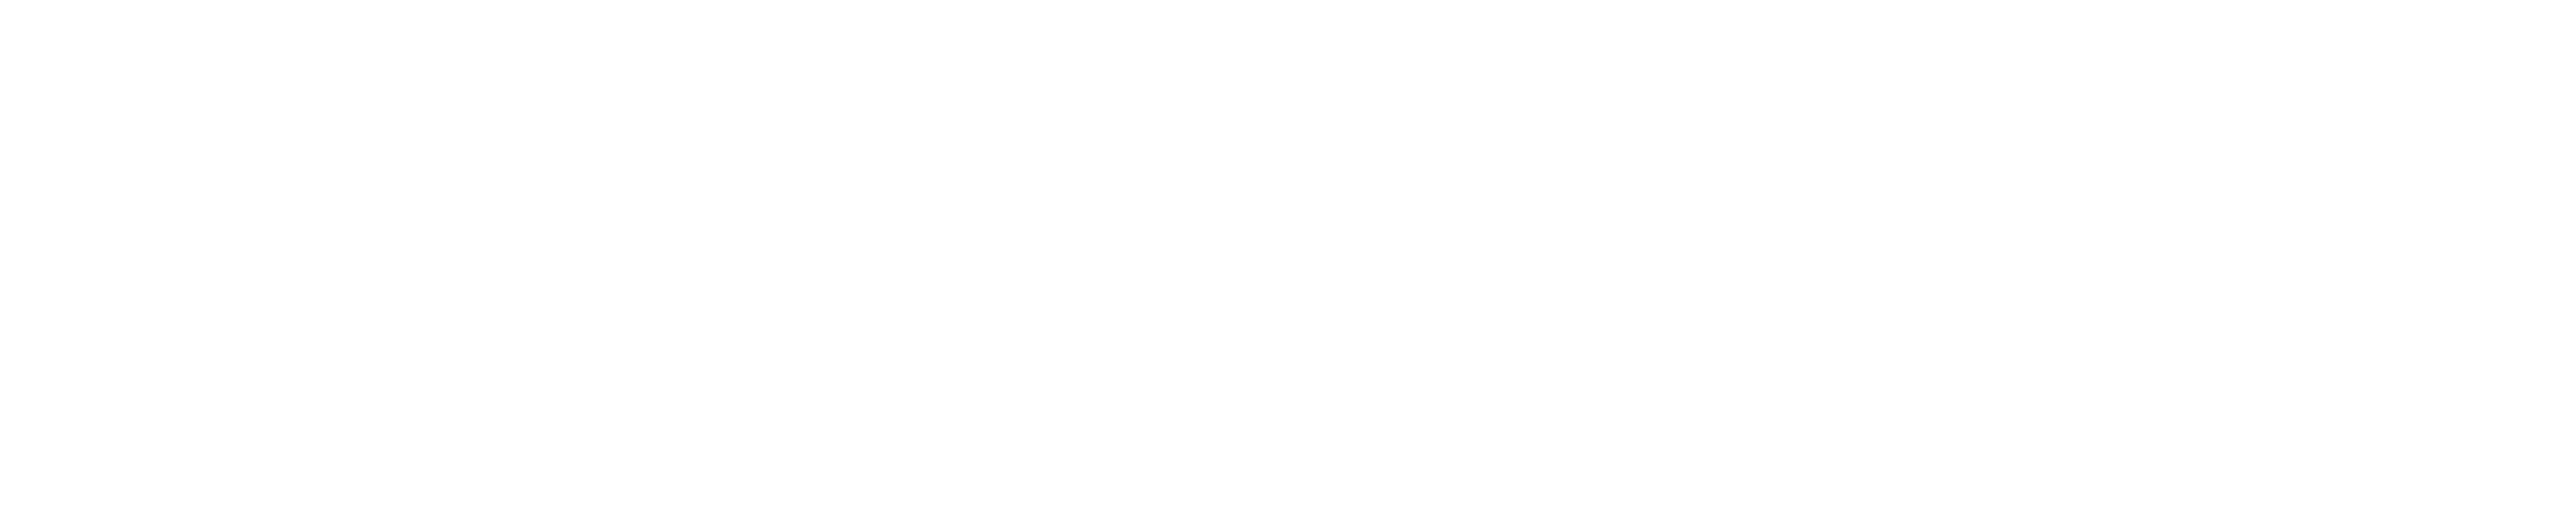 Secretaría_de_Cultura_logotipo.svg